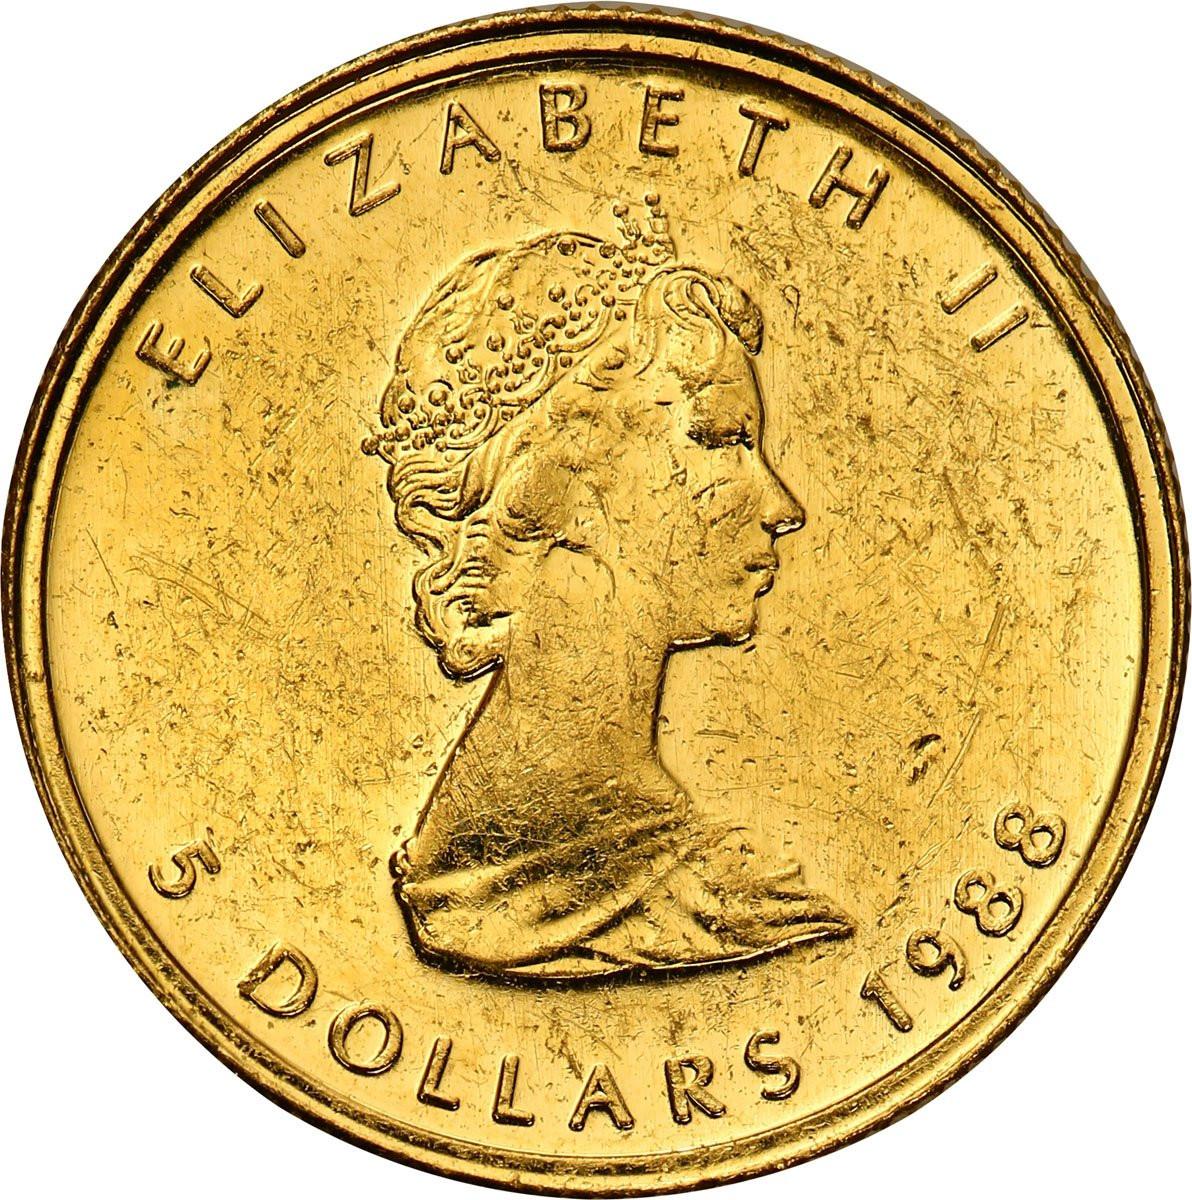 Kanada 5 dolarów 1988 liść klonowy 1/10 uncji złota